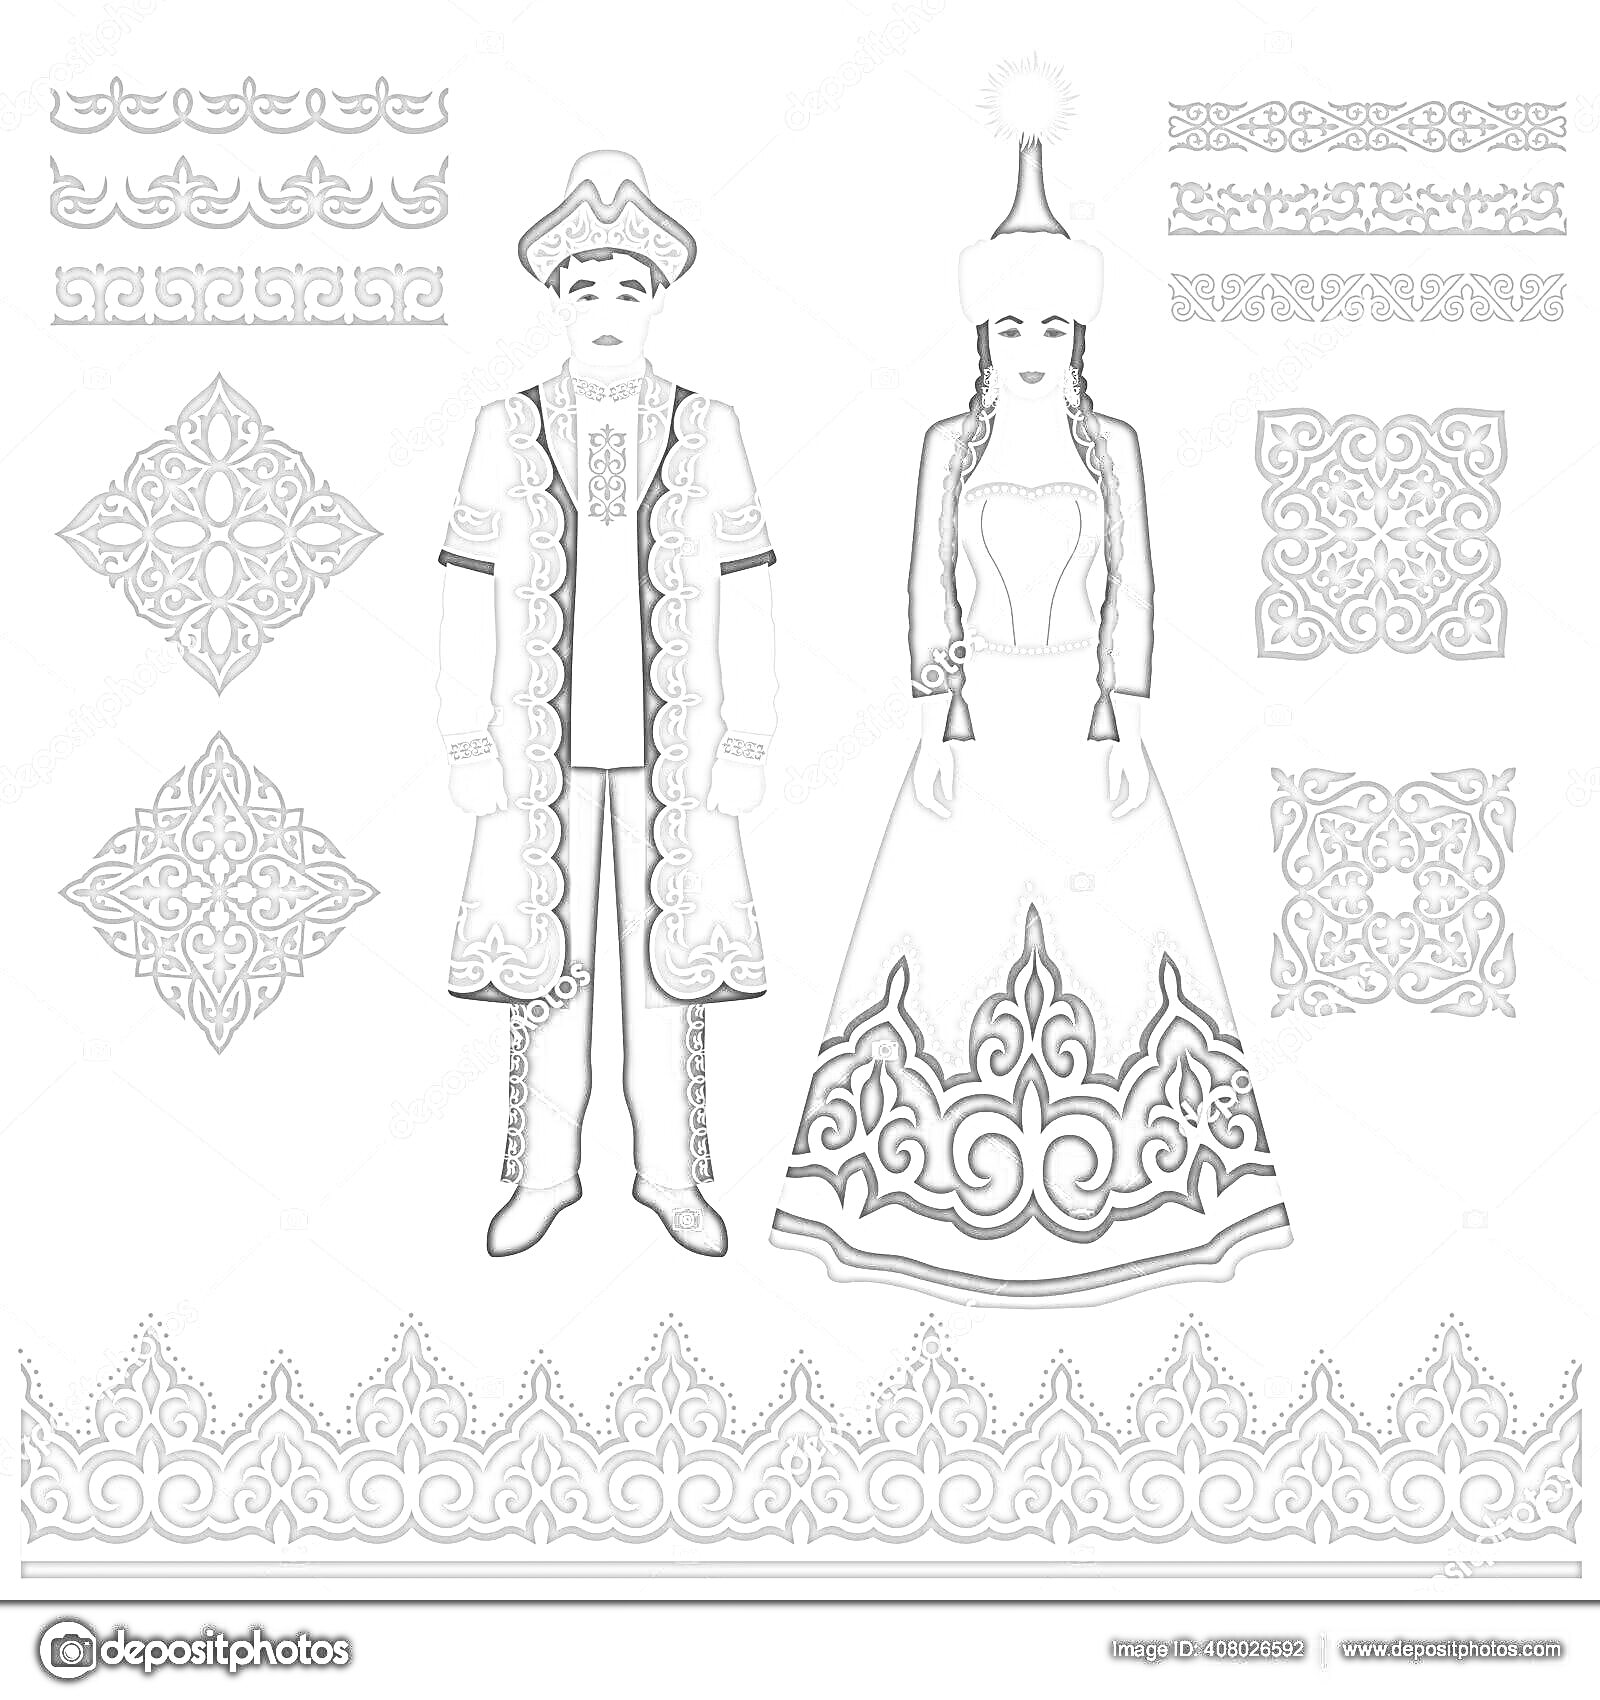 Раскраска Казахский камзол для мальчика и девочки с головными уборами, узорами и орнаментами